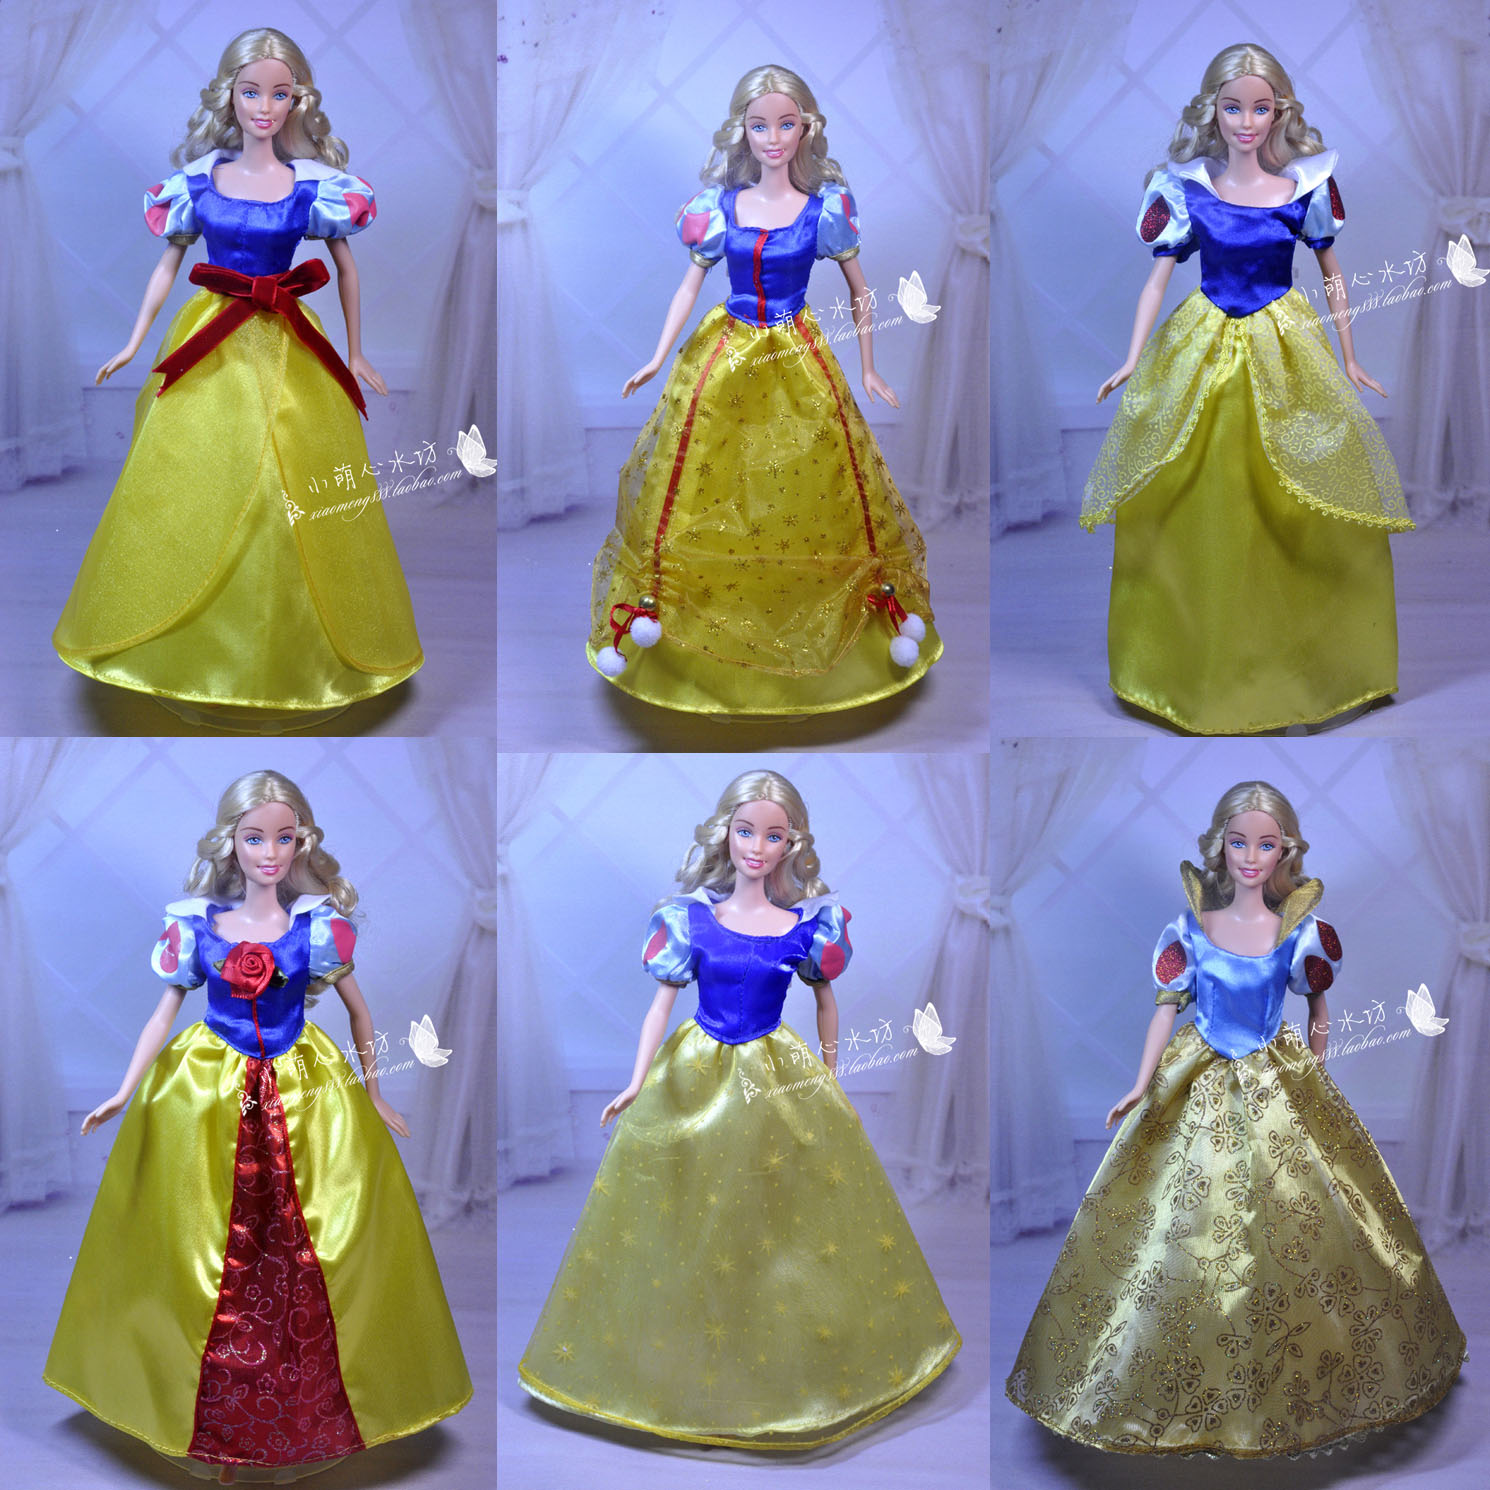 正版芭芘娃娃衣迪士尼宫廷白雪公主礼服童话礼服多款女孩生日礼物